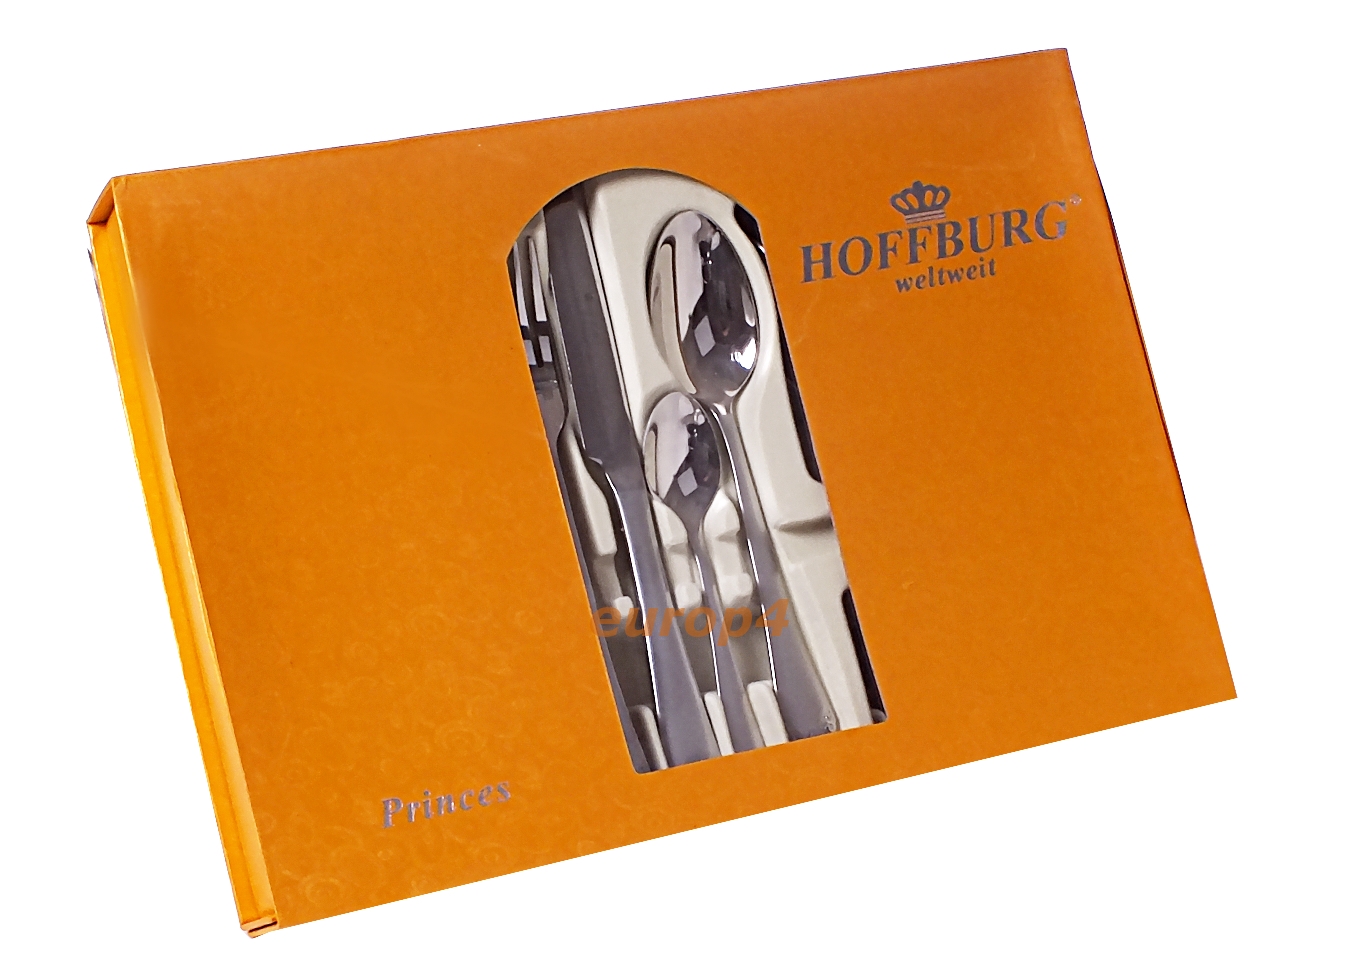 Sztućce HoffBurg zestaw komplet widelce łyżki wzór 2411 outlet